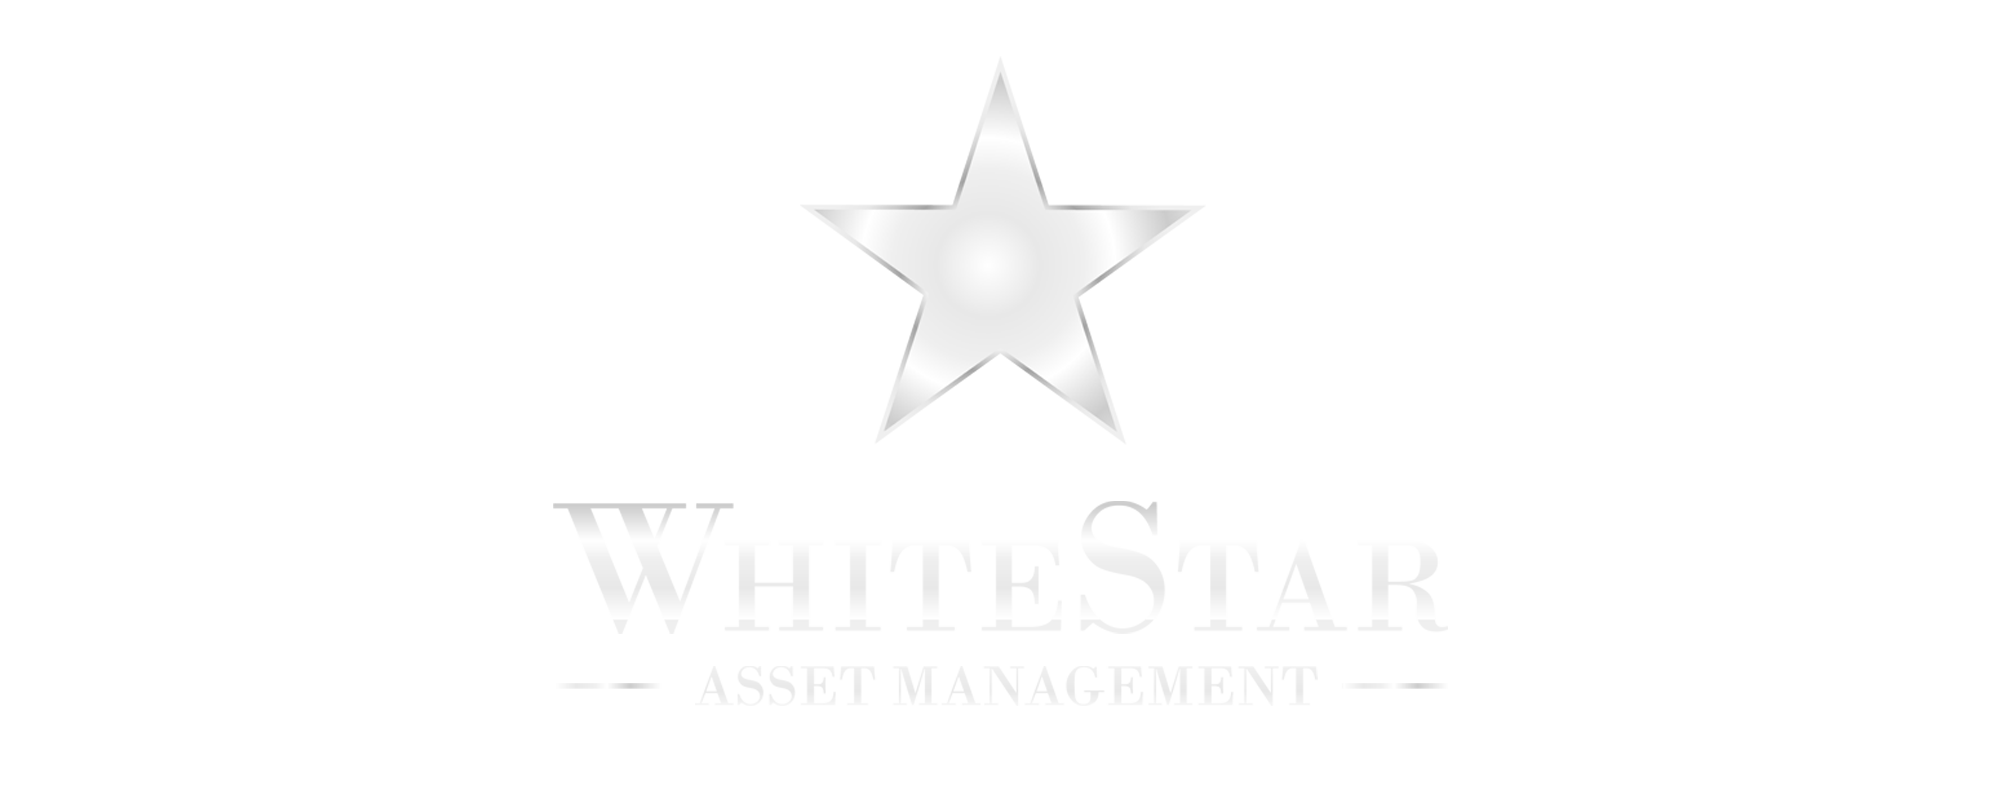 WhiteStar Asset Management